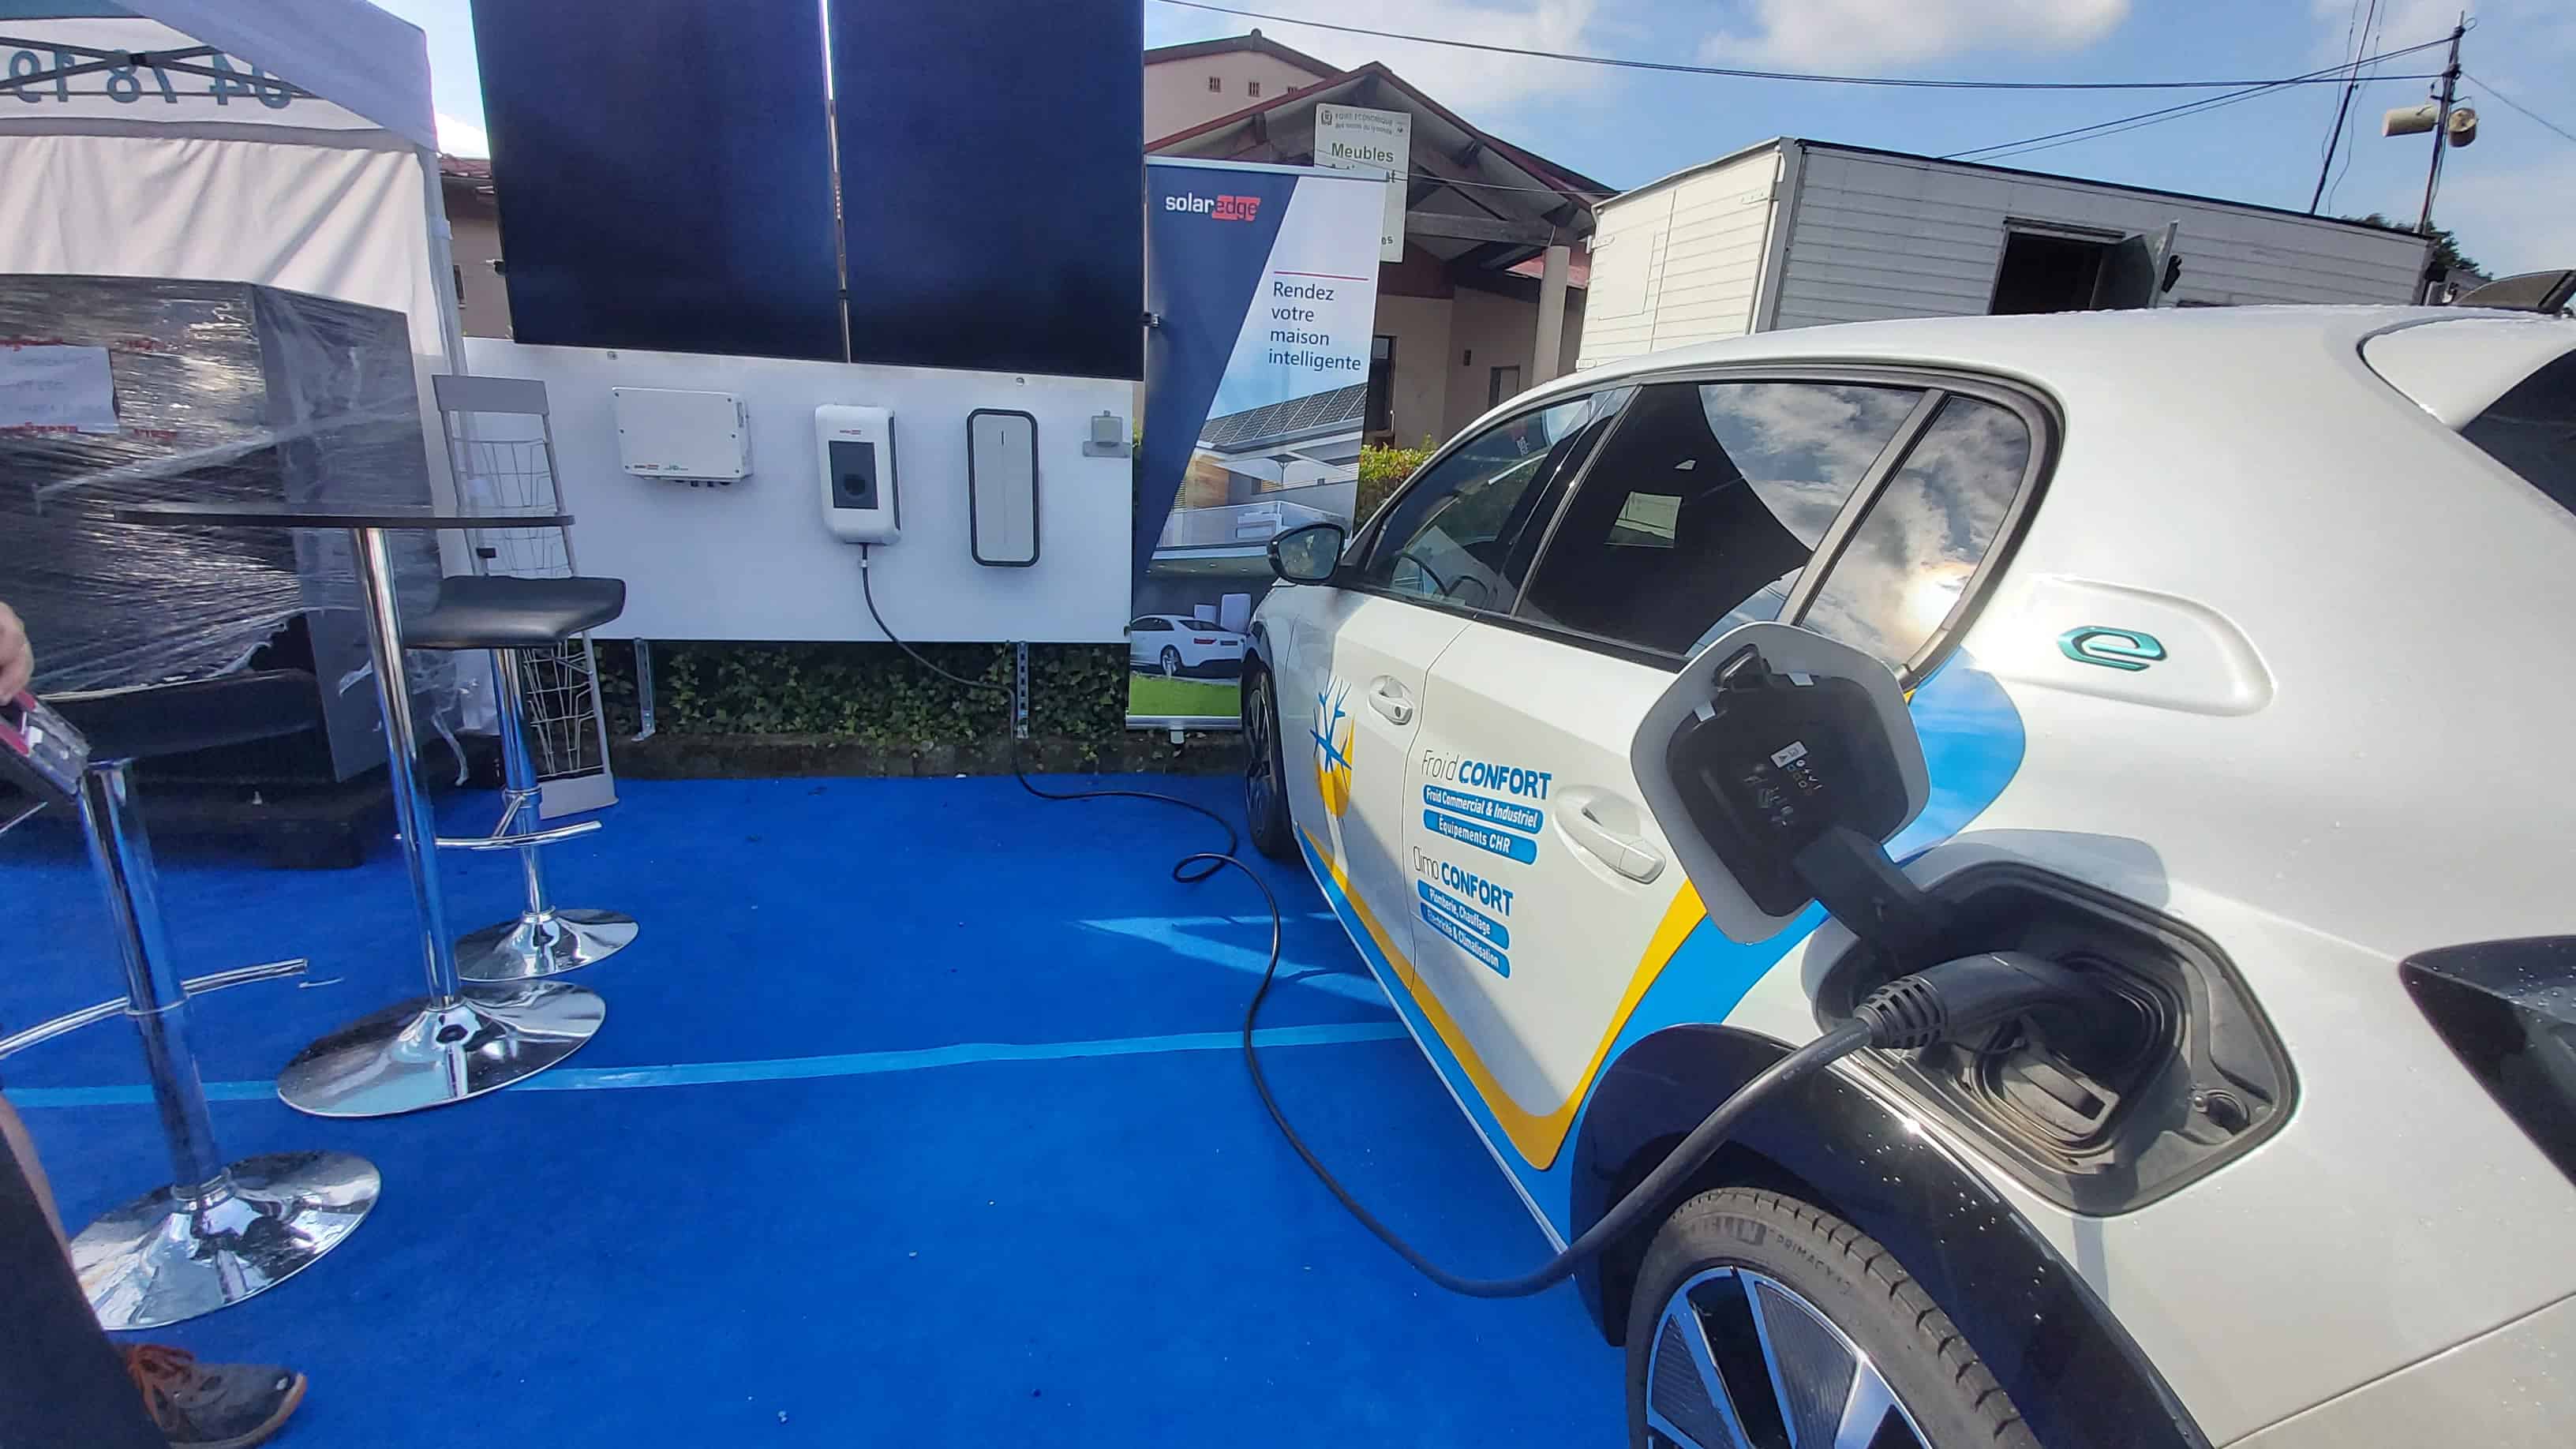 Climo Confort : installation de bornes de recharge 22 kW pour une flotte professionnelle de véhicules électriques, dans les Monts du Lyonnais (Lyon, Saint Etienne)